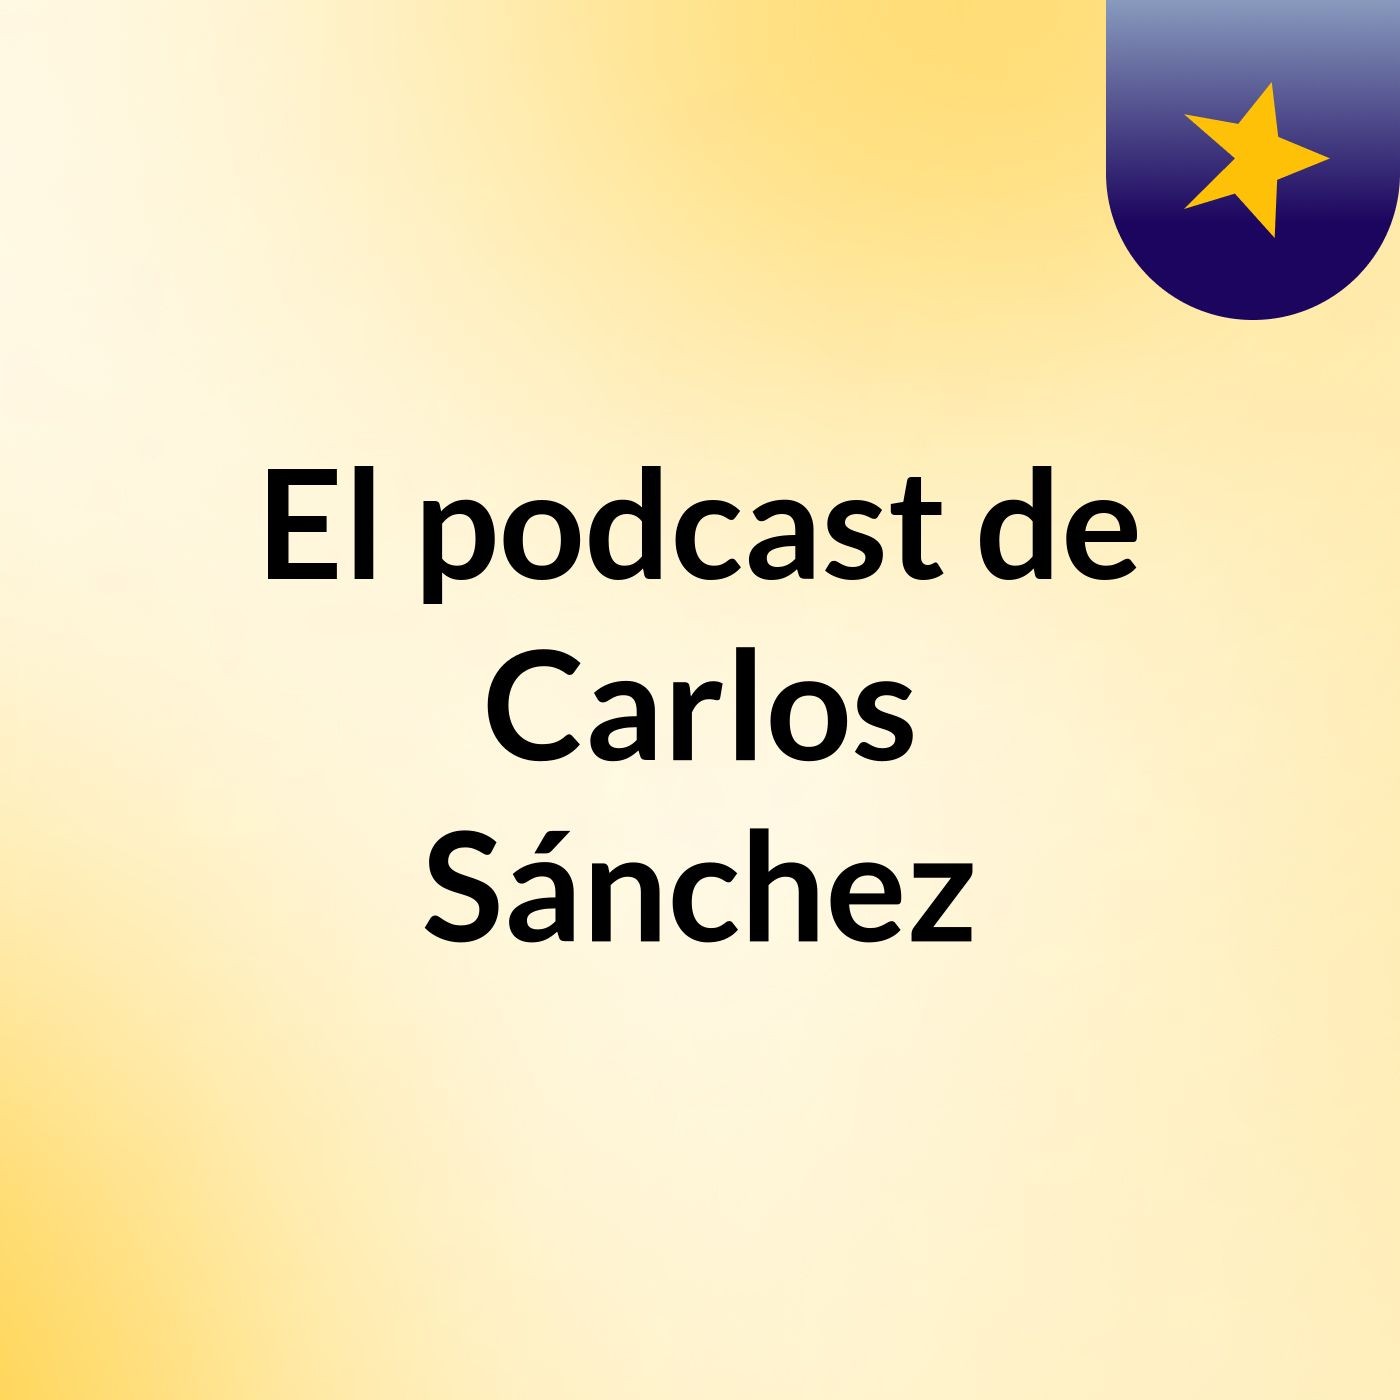 El podcast de Carlos Sánchez